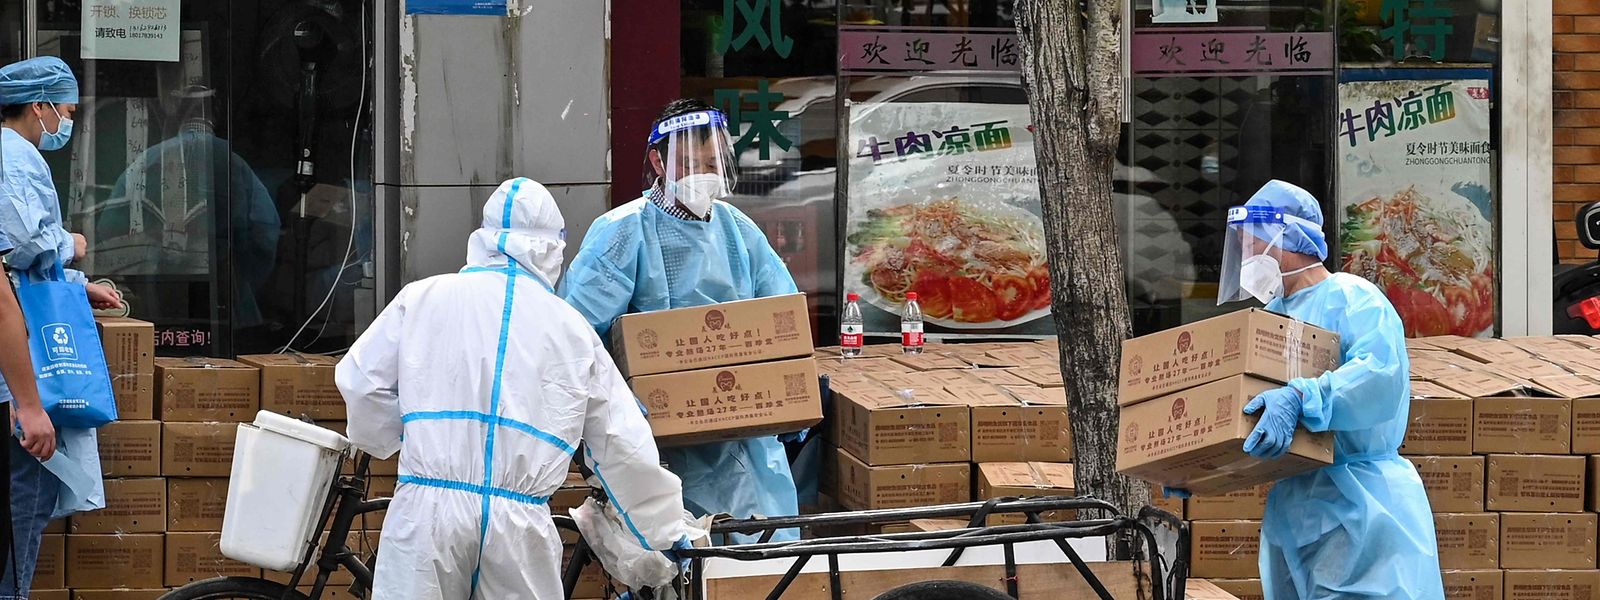 In einem Viertel von Shanghai verteilen Helfer in Schutzkleidung Lebensmittelpakete.